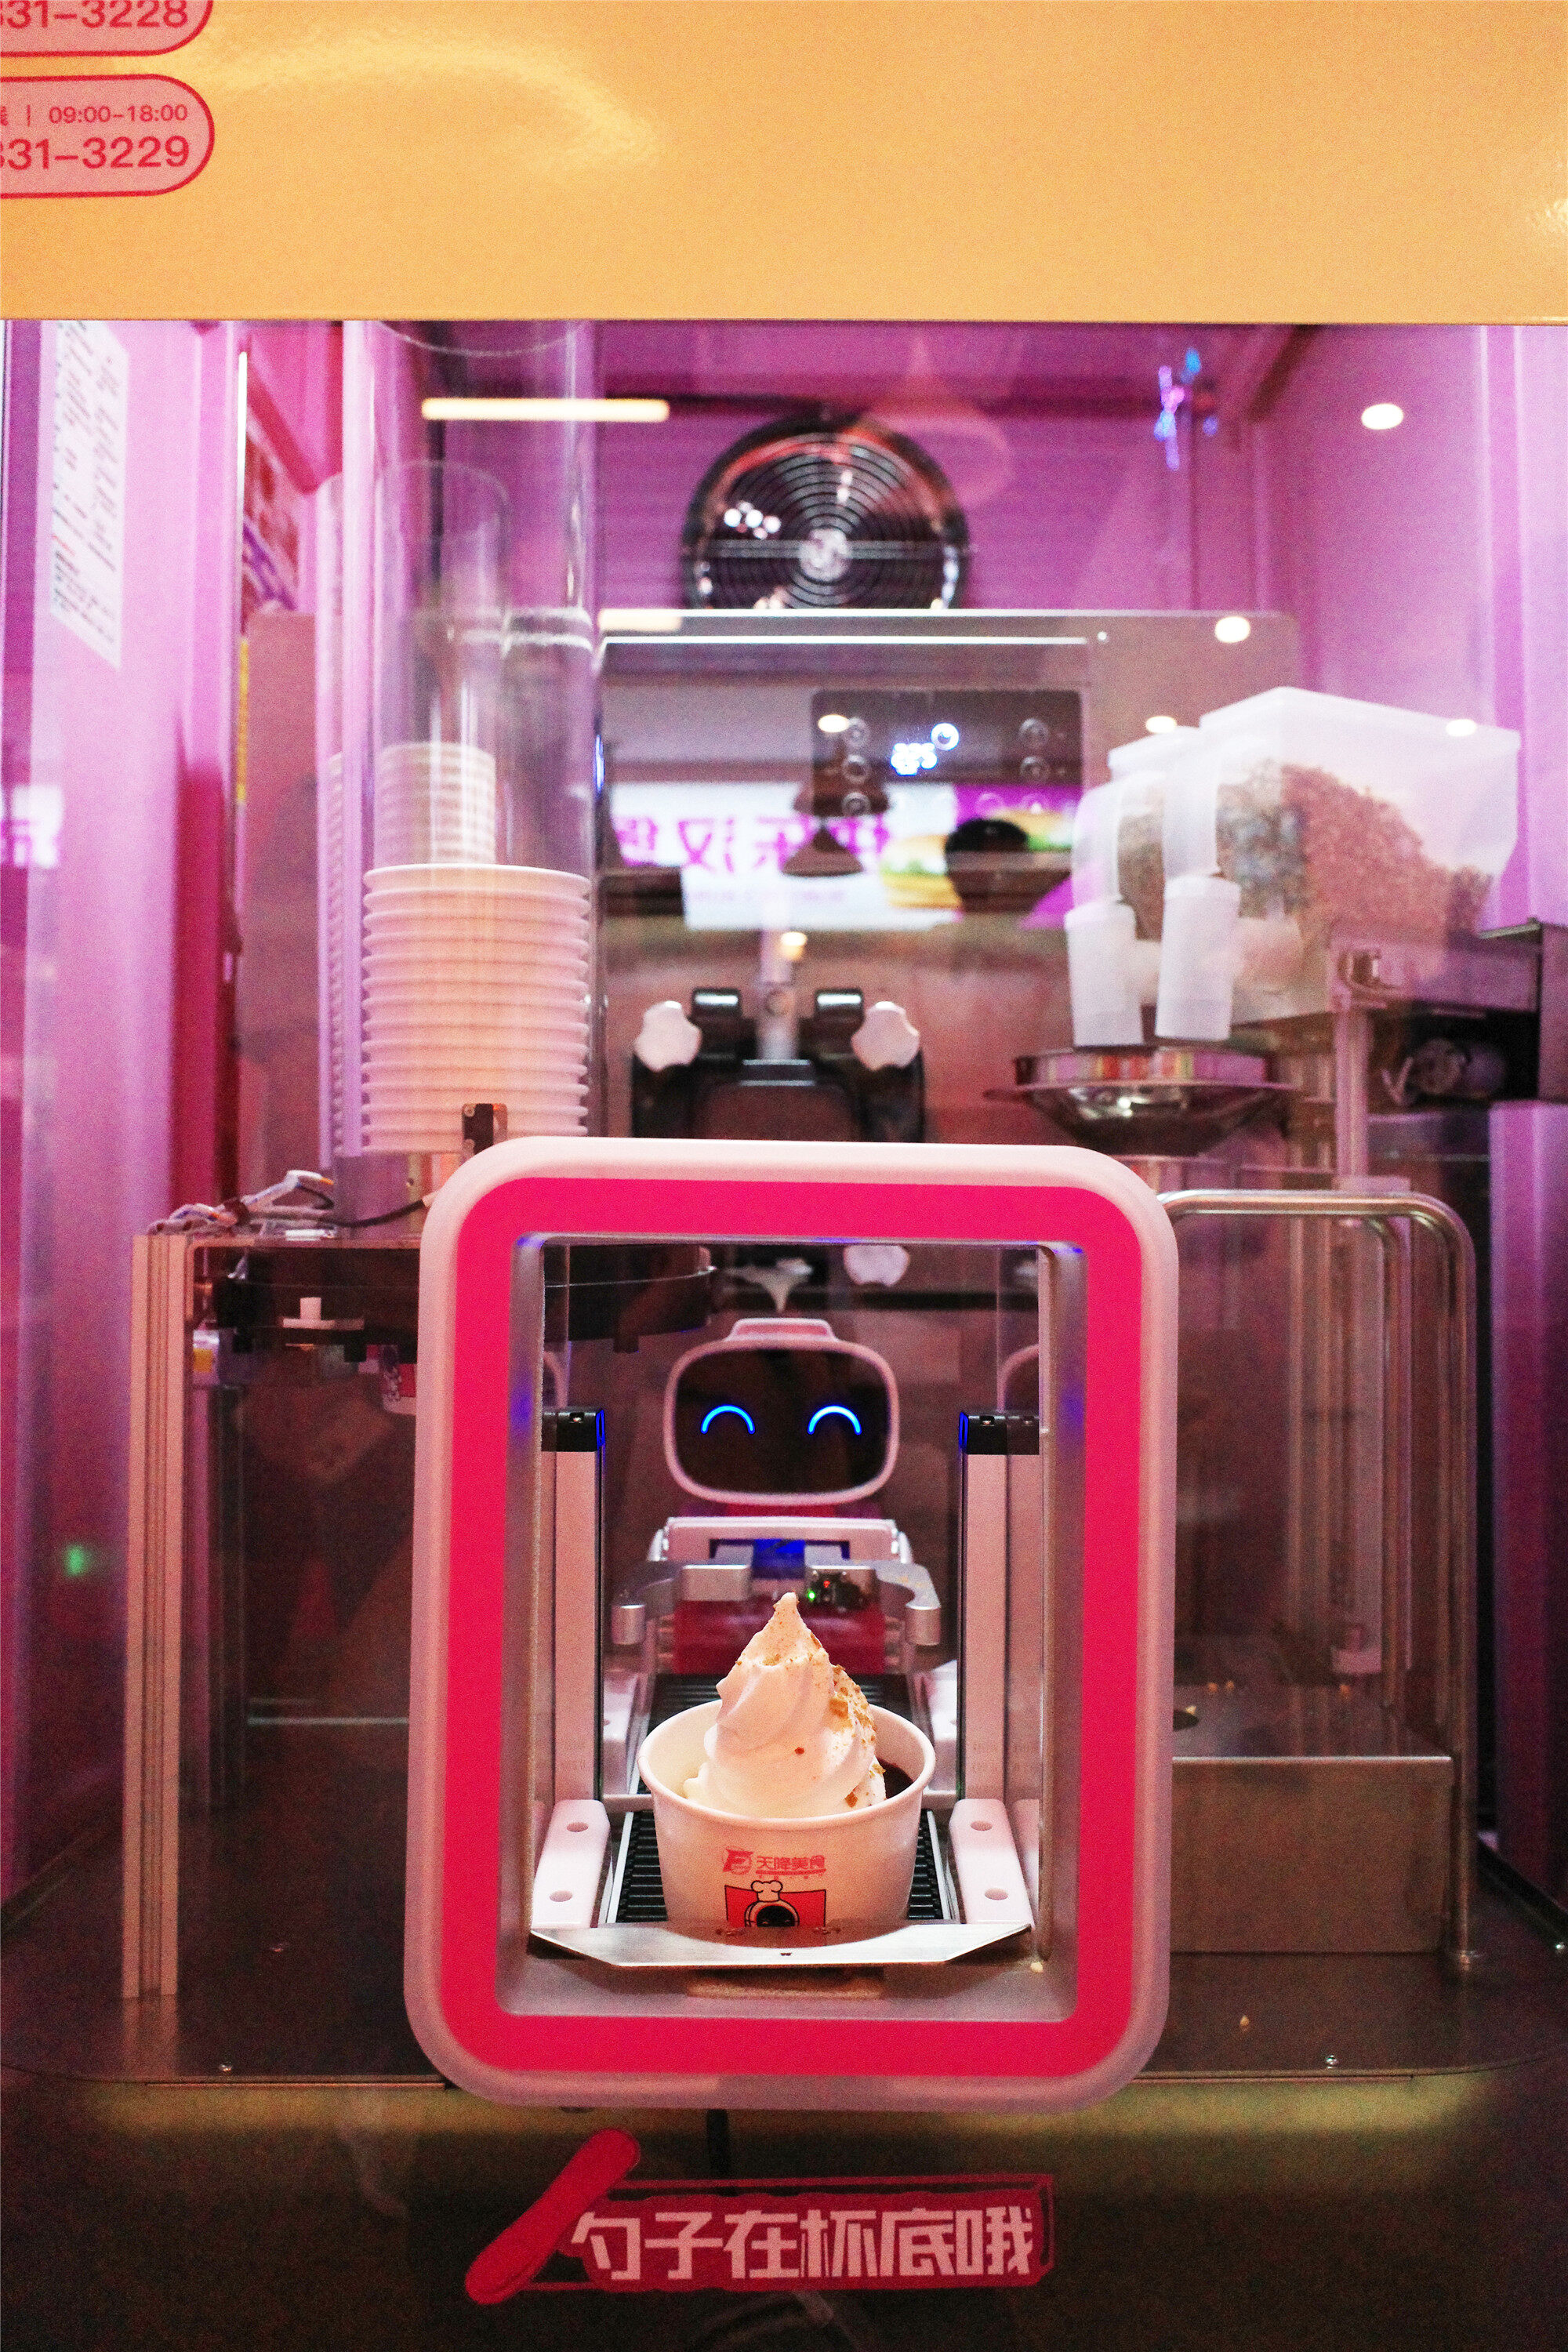 广东碧桂园职业学院首开机器人餐厅,校企合作共育创新创业人才|清远